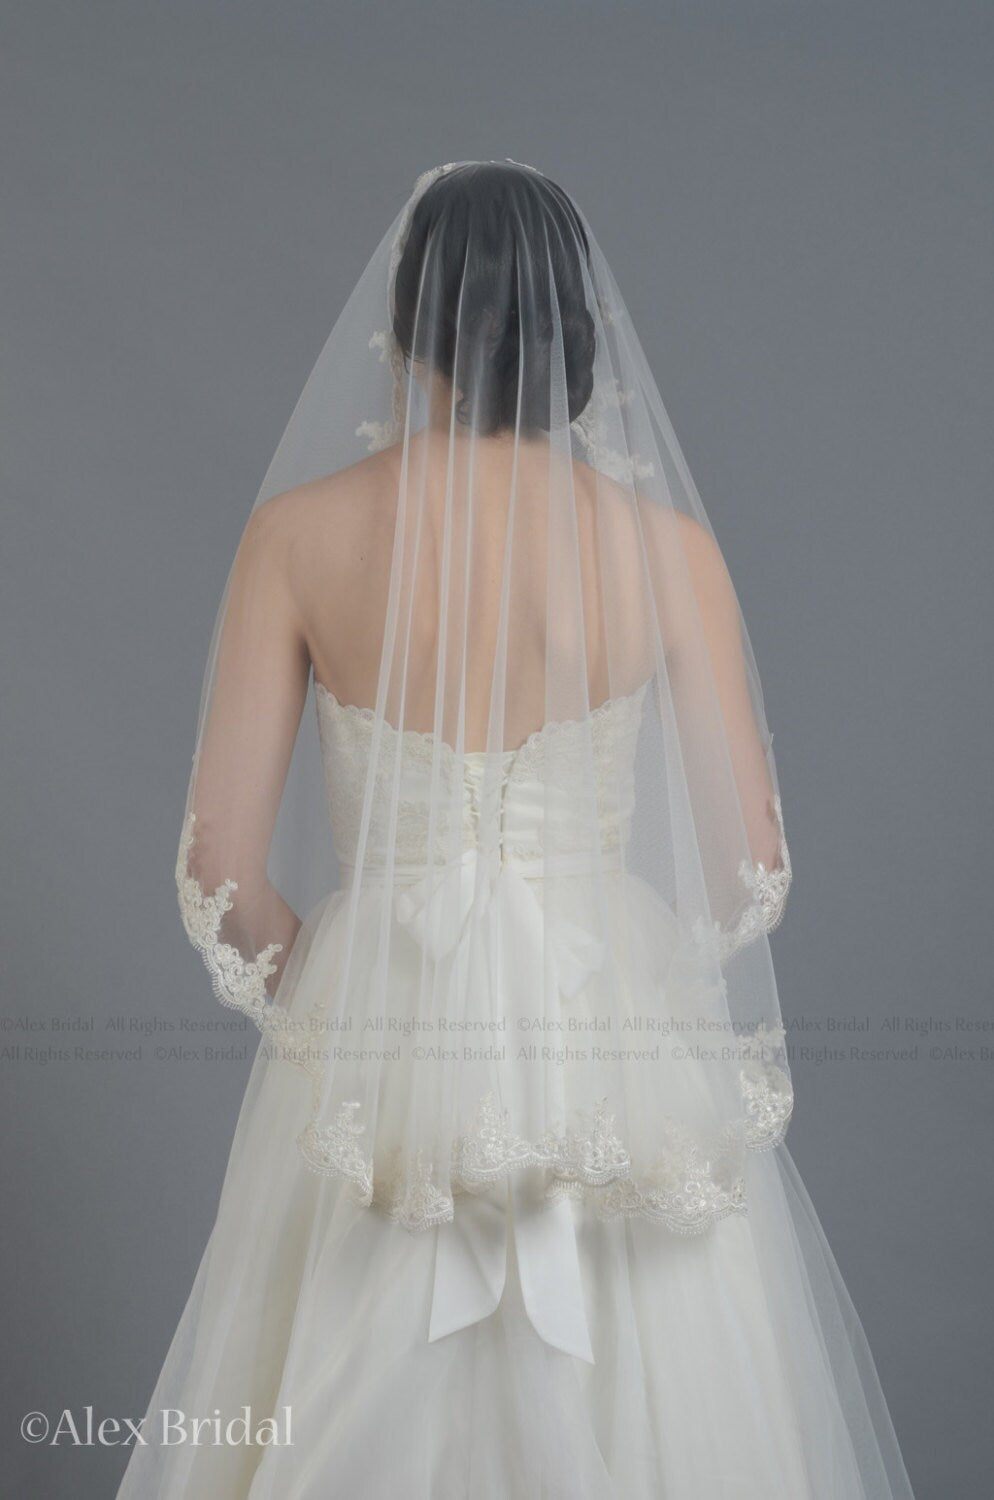 wedding veil, bridal veil, mantilla veil, fingertip length veil, wedding veil white, wedding veil ivory, chapel length veil